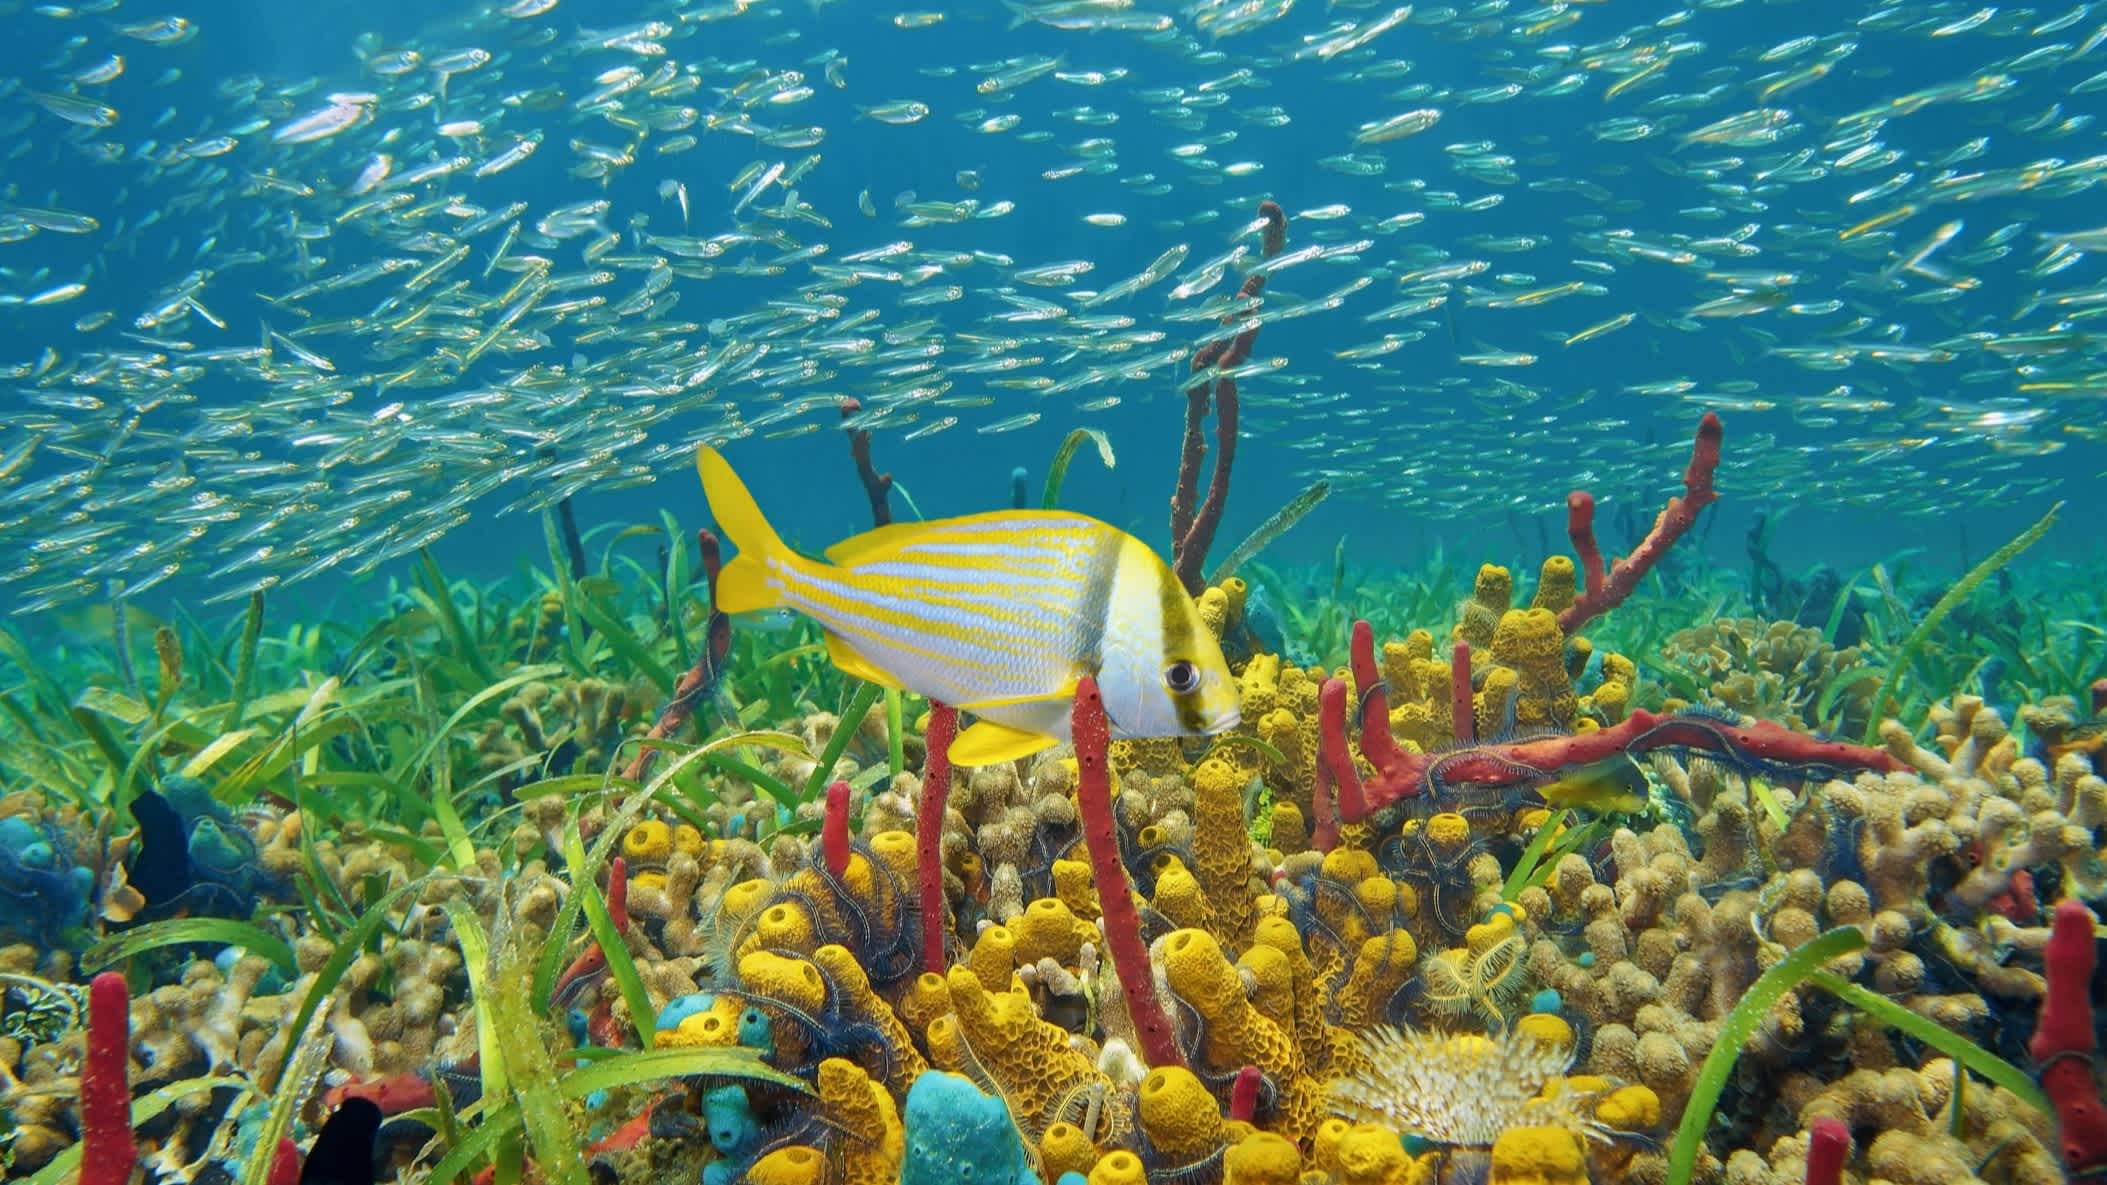 Buntes Unterwasserleben mit Schwämmen, Korallen und Fischschwärmen, karibisches Meer an der Küste Kolumbiens.